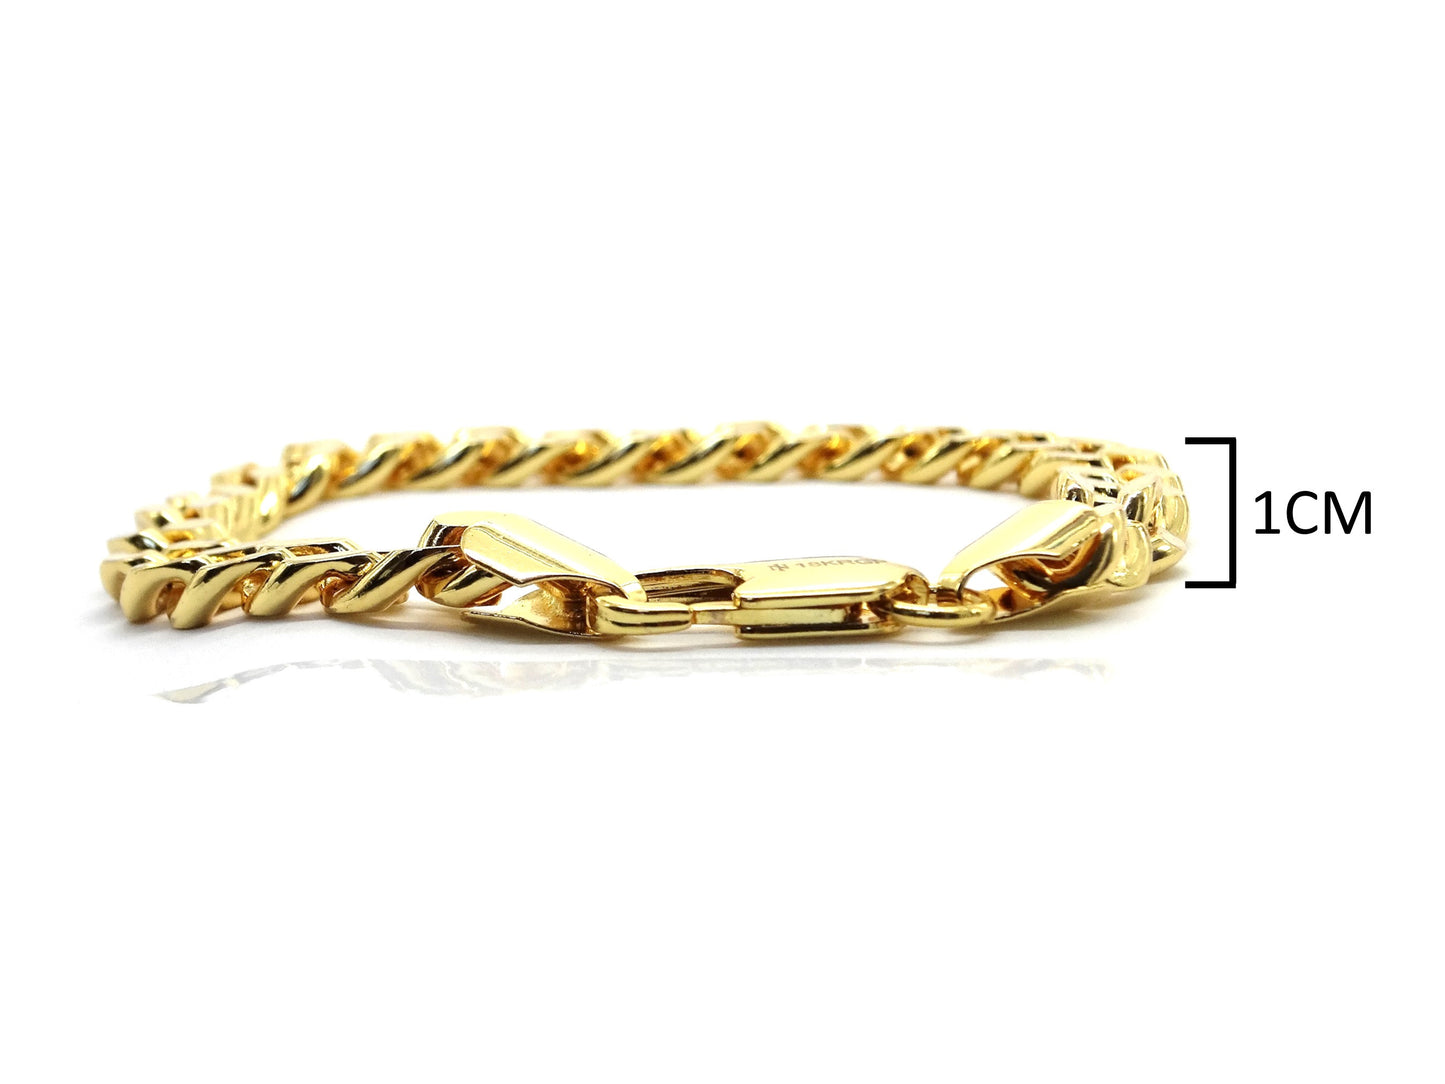 Gold curb link bracelet MEASUREMENT